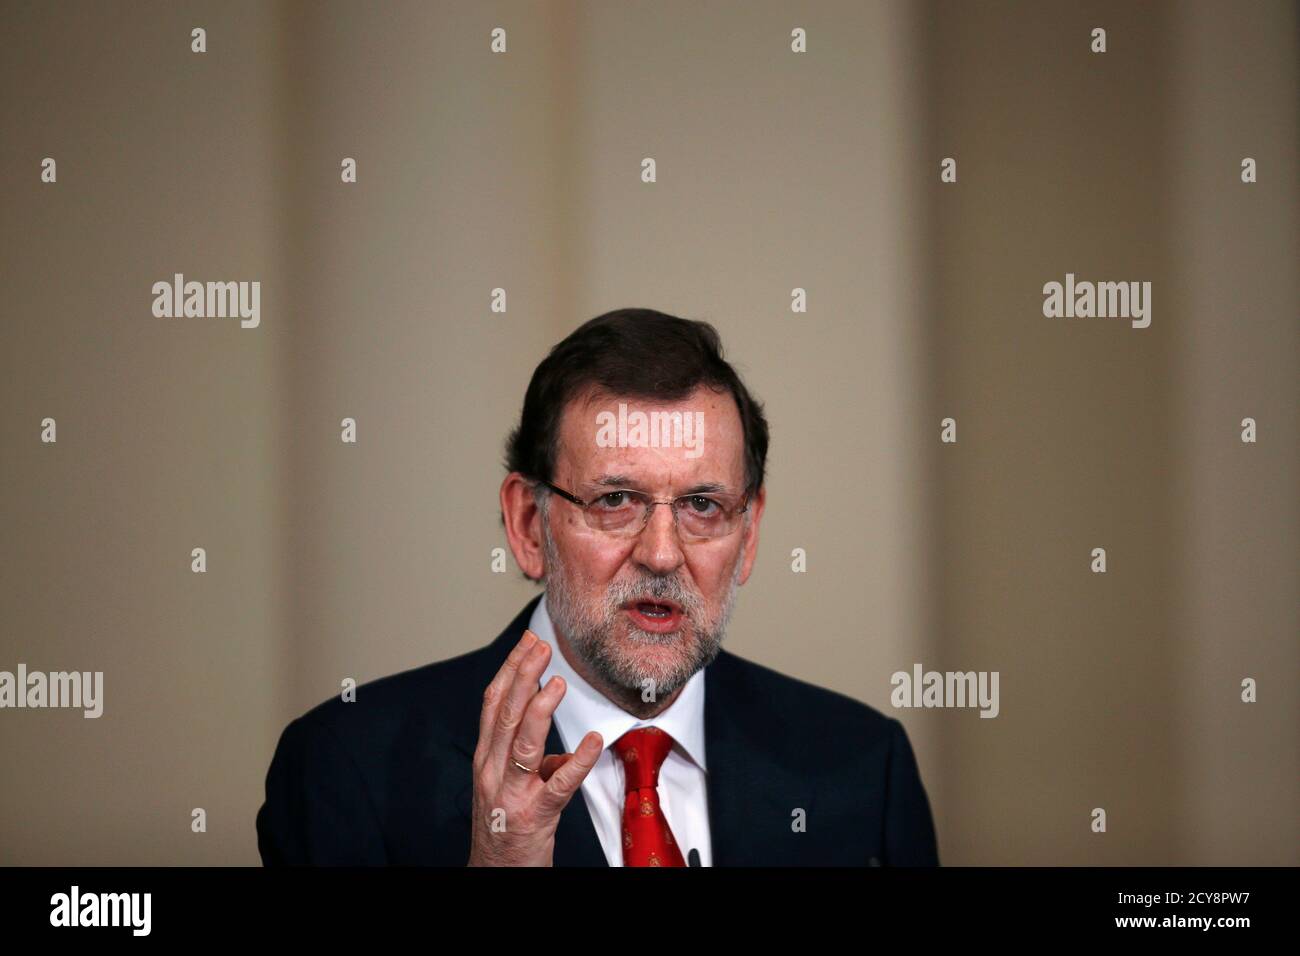 Spaniens Premierminister Mariano Rajoy spricht während einer Präsentation über soziale Aktionseinheiten im Moncloa-Palast in Madrid am 11. Juli 2013. Spaniens Premierminister Mariano Rajoy könnte sich mit neuen Korruptionsvorwürfen gegen seine Volkspartei schlagen, aber die Regierung ist stark genug, um den Sturm zu überstehen, sagen Analysten und Quellen. REUTERS/Juan Medina (SPANIEN - Schlagwörter: POLITIK) Stockfoto